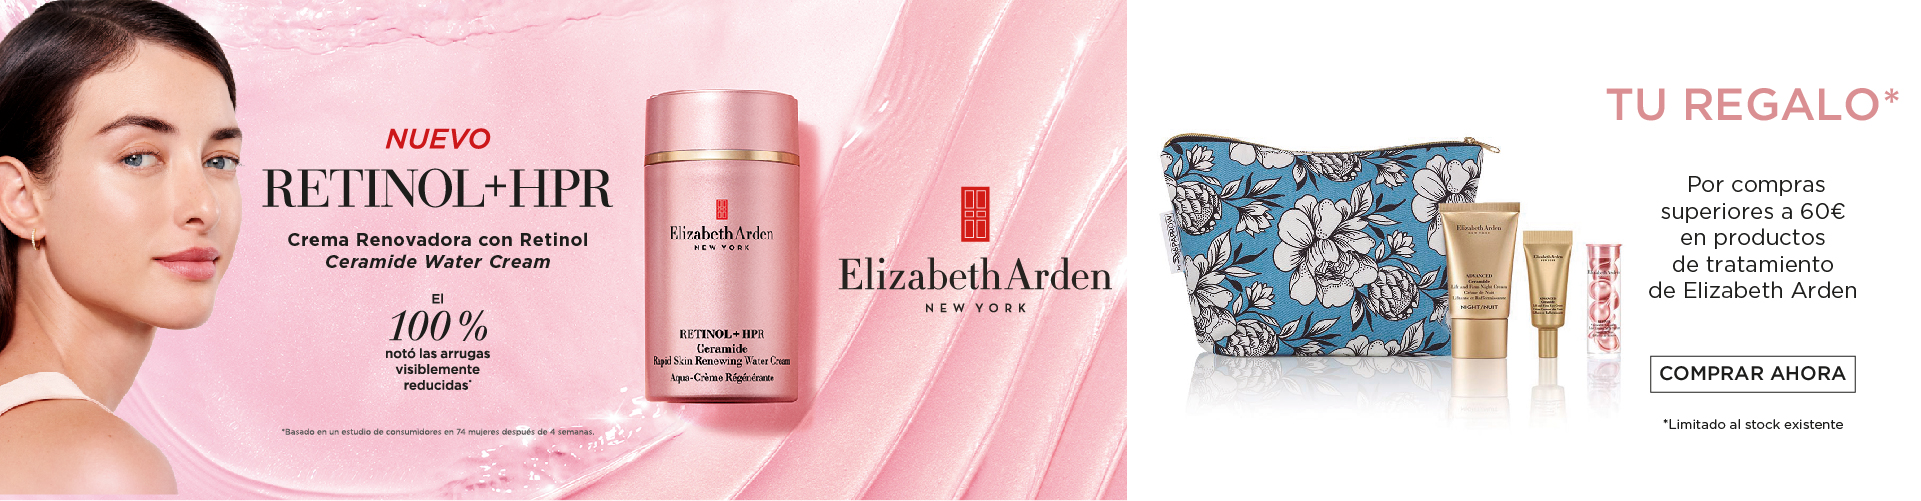 Elizabeth Arden | Nueva Crema Retinol + HPR Ceramide | Prieto.es